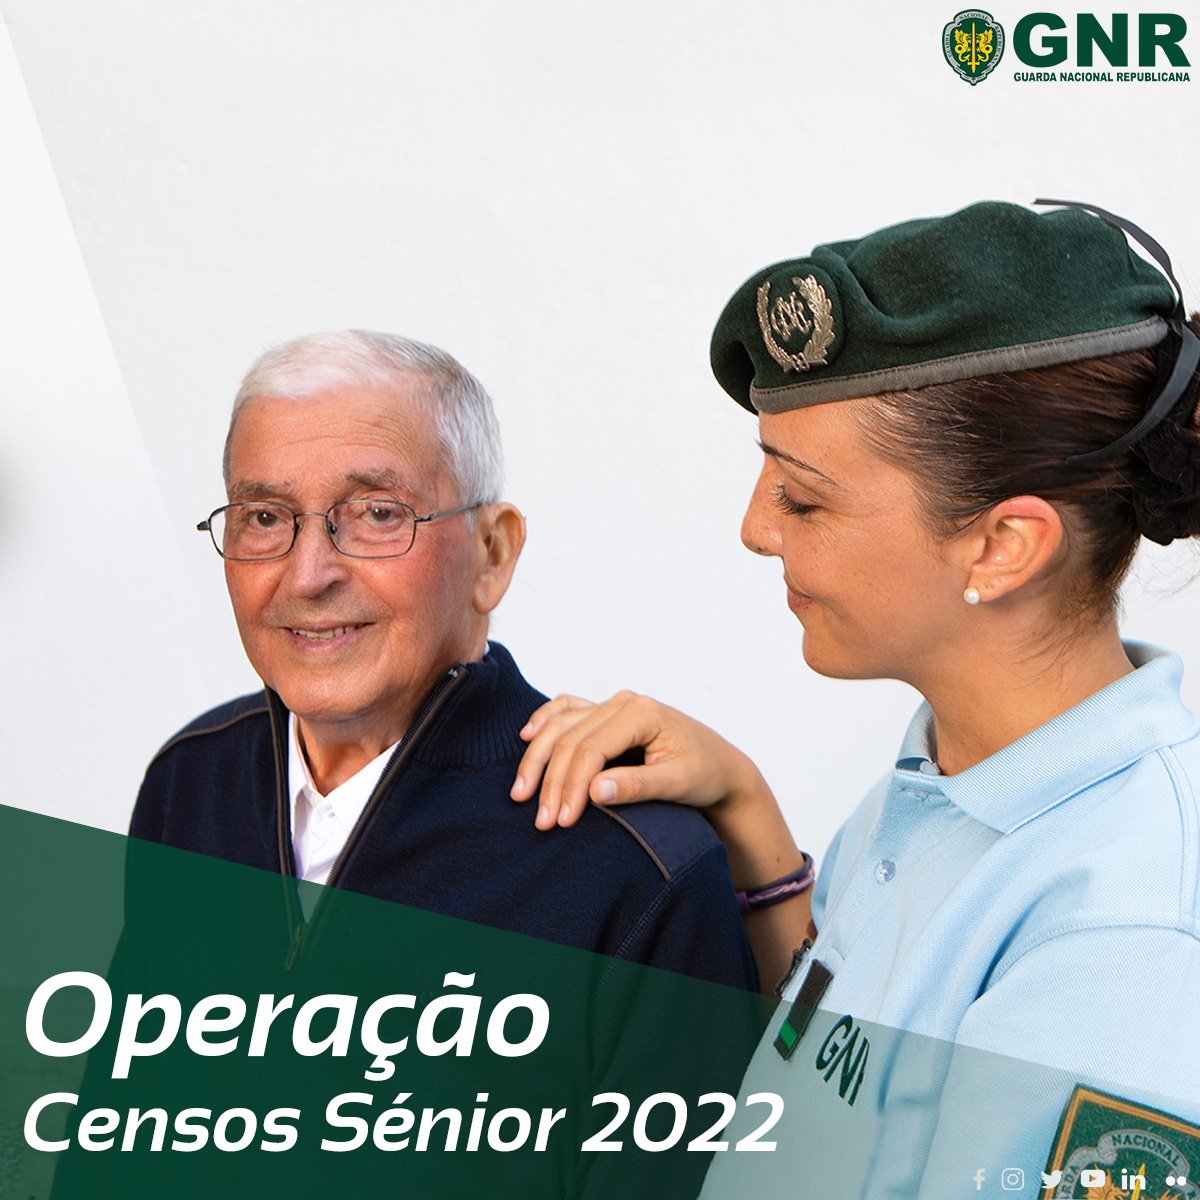 GNR: Operação “Censos Sénior 2022”